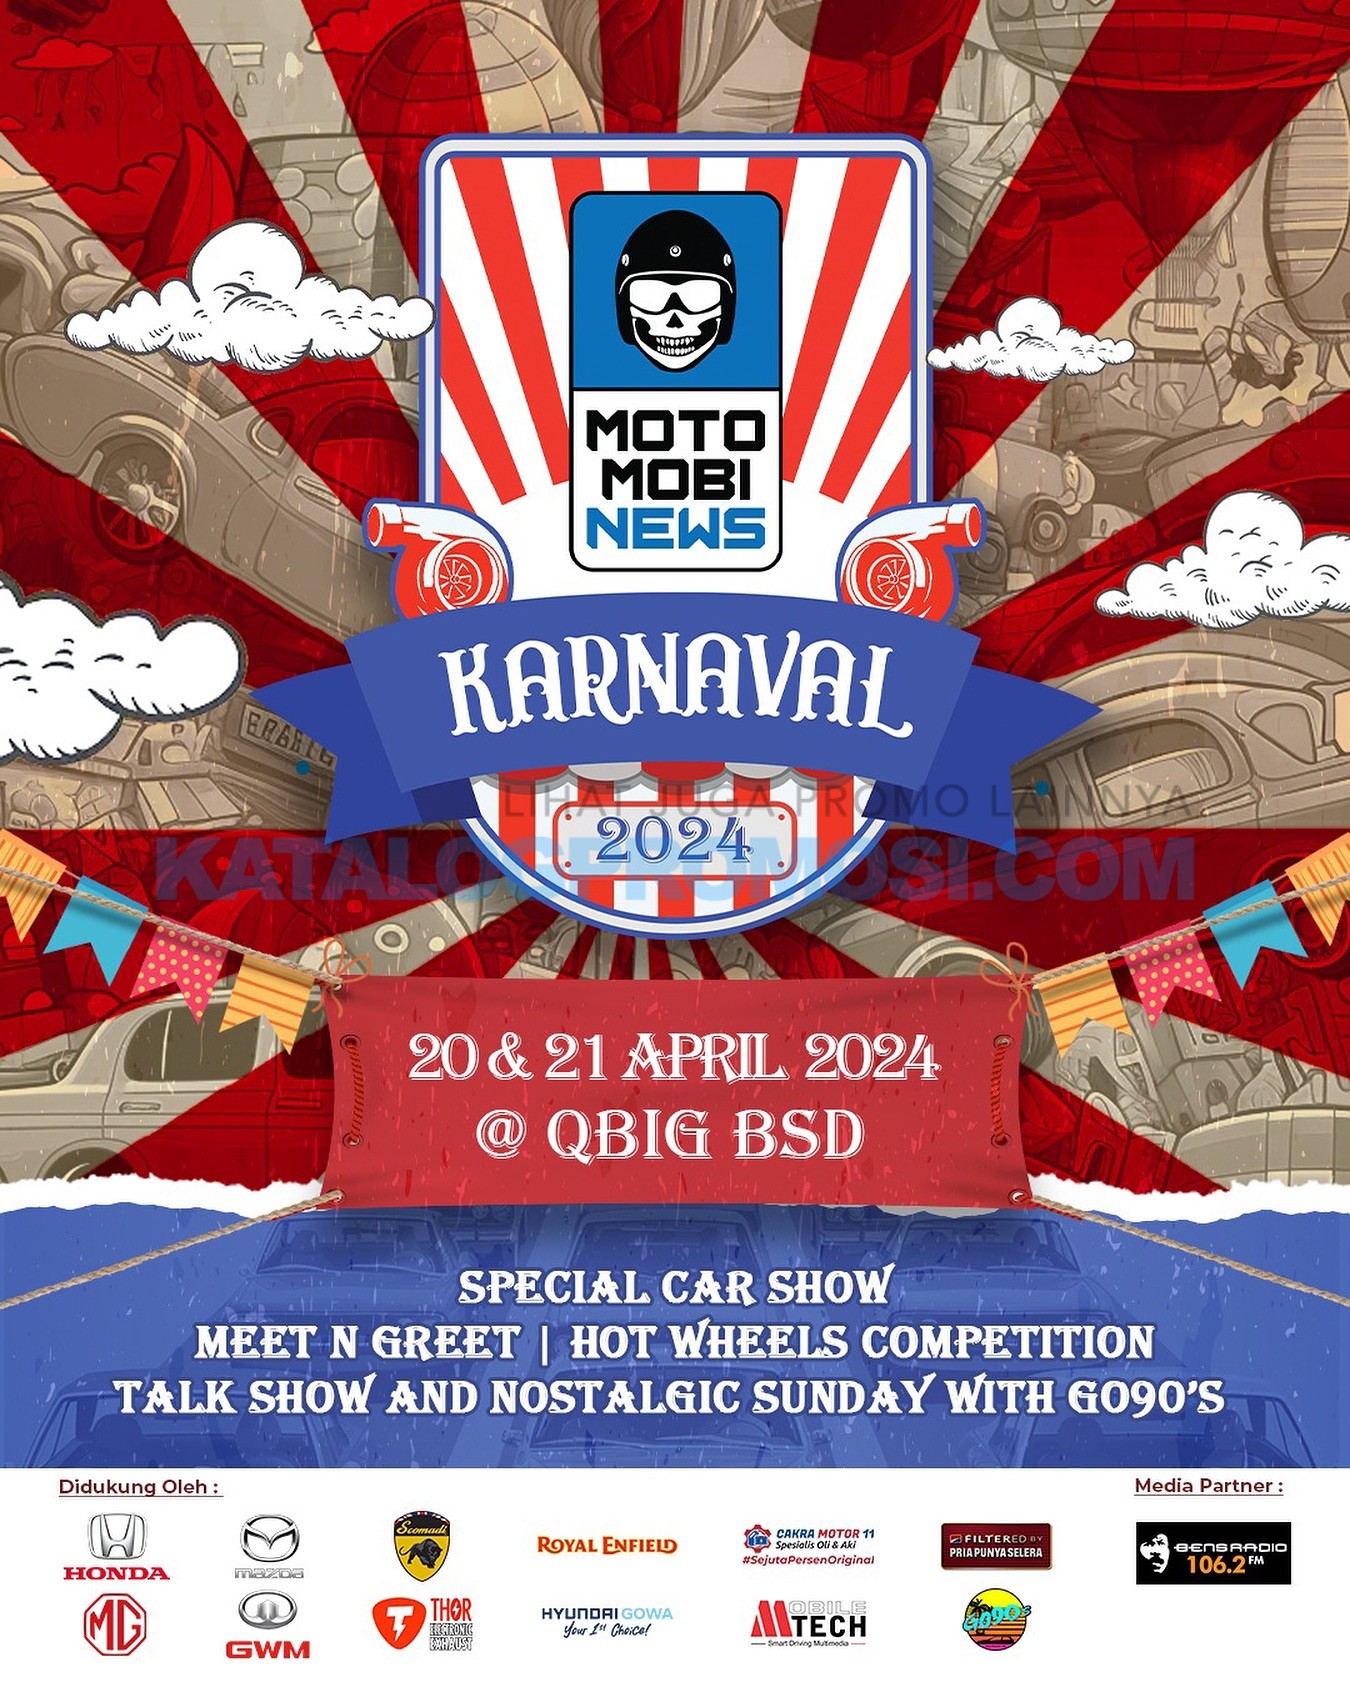 Motomobi News Karnaval di QBIG BSD City tanggal 20-21 April 2024